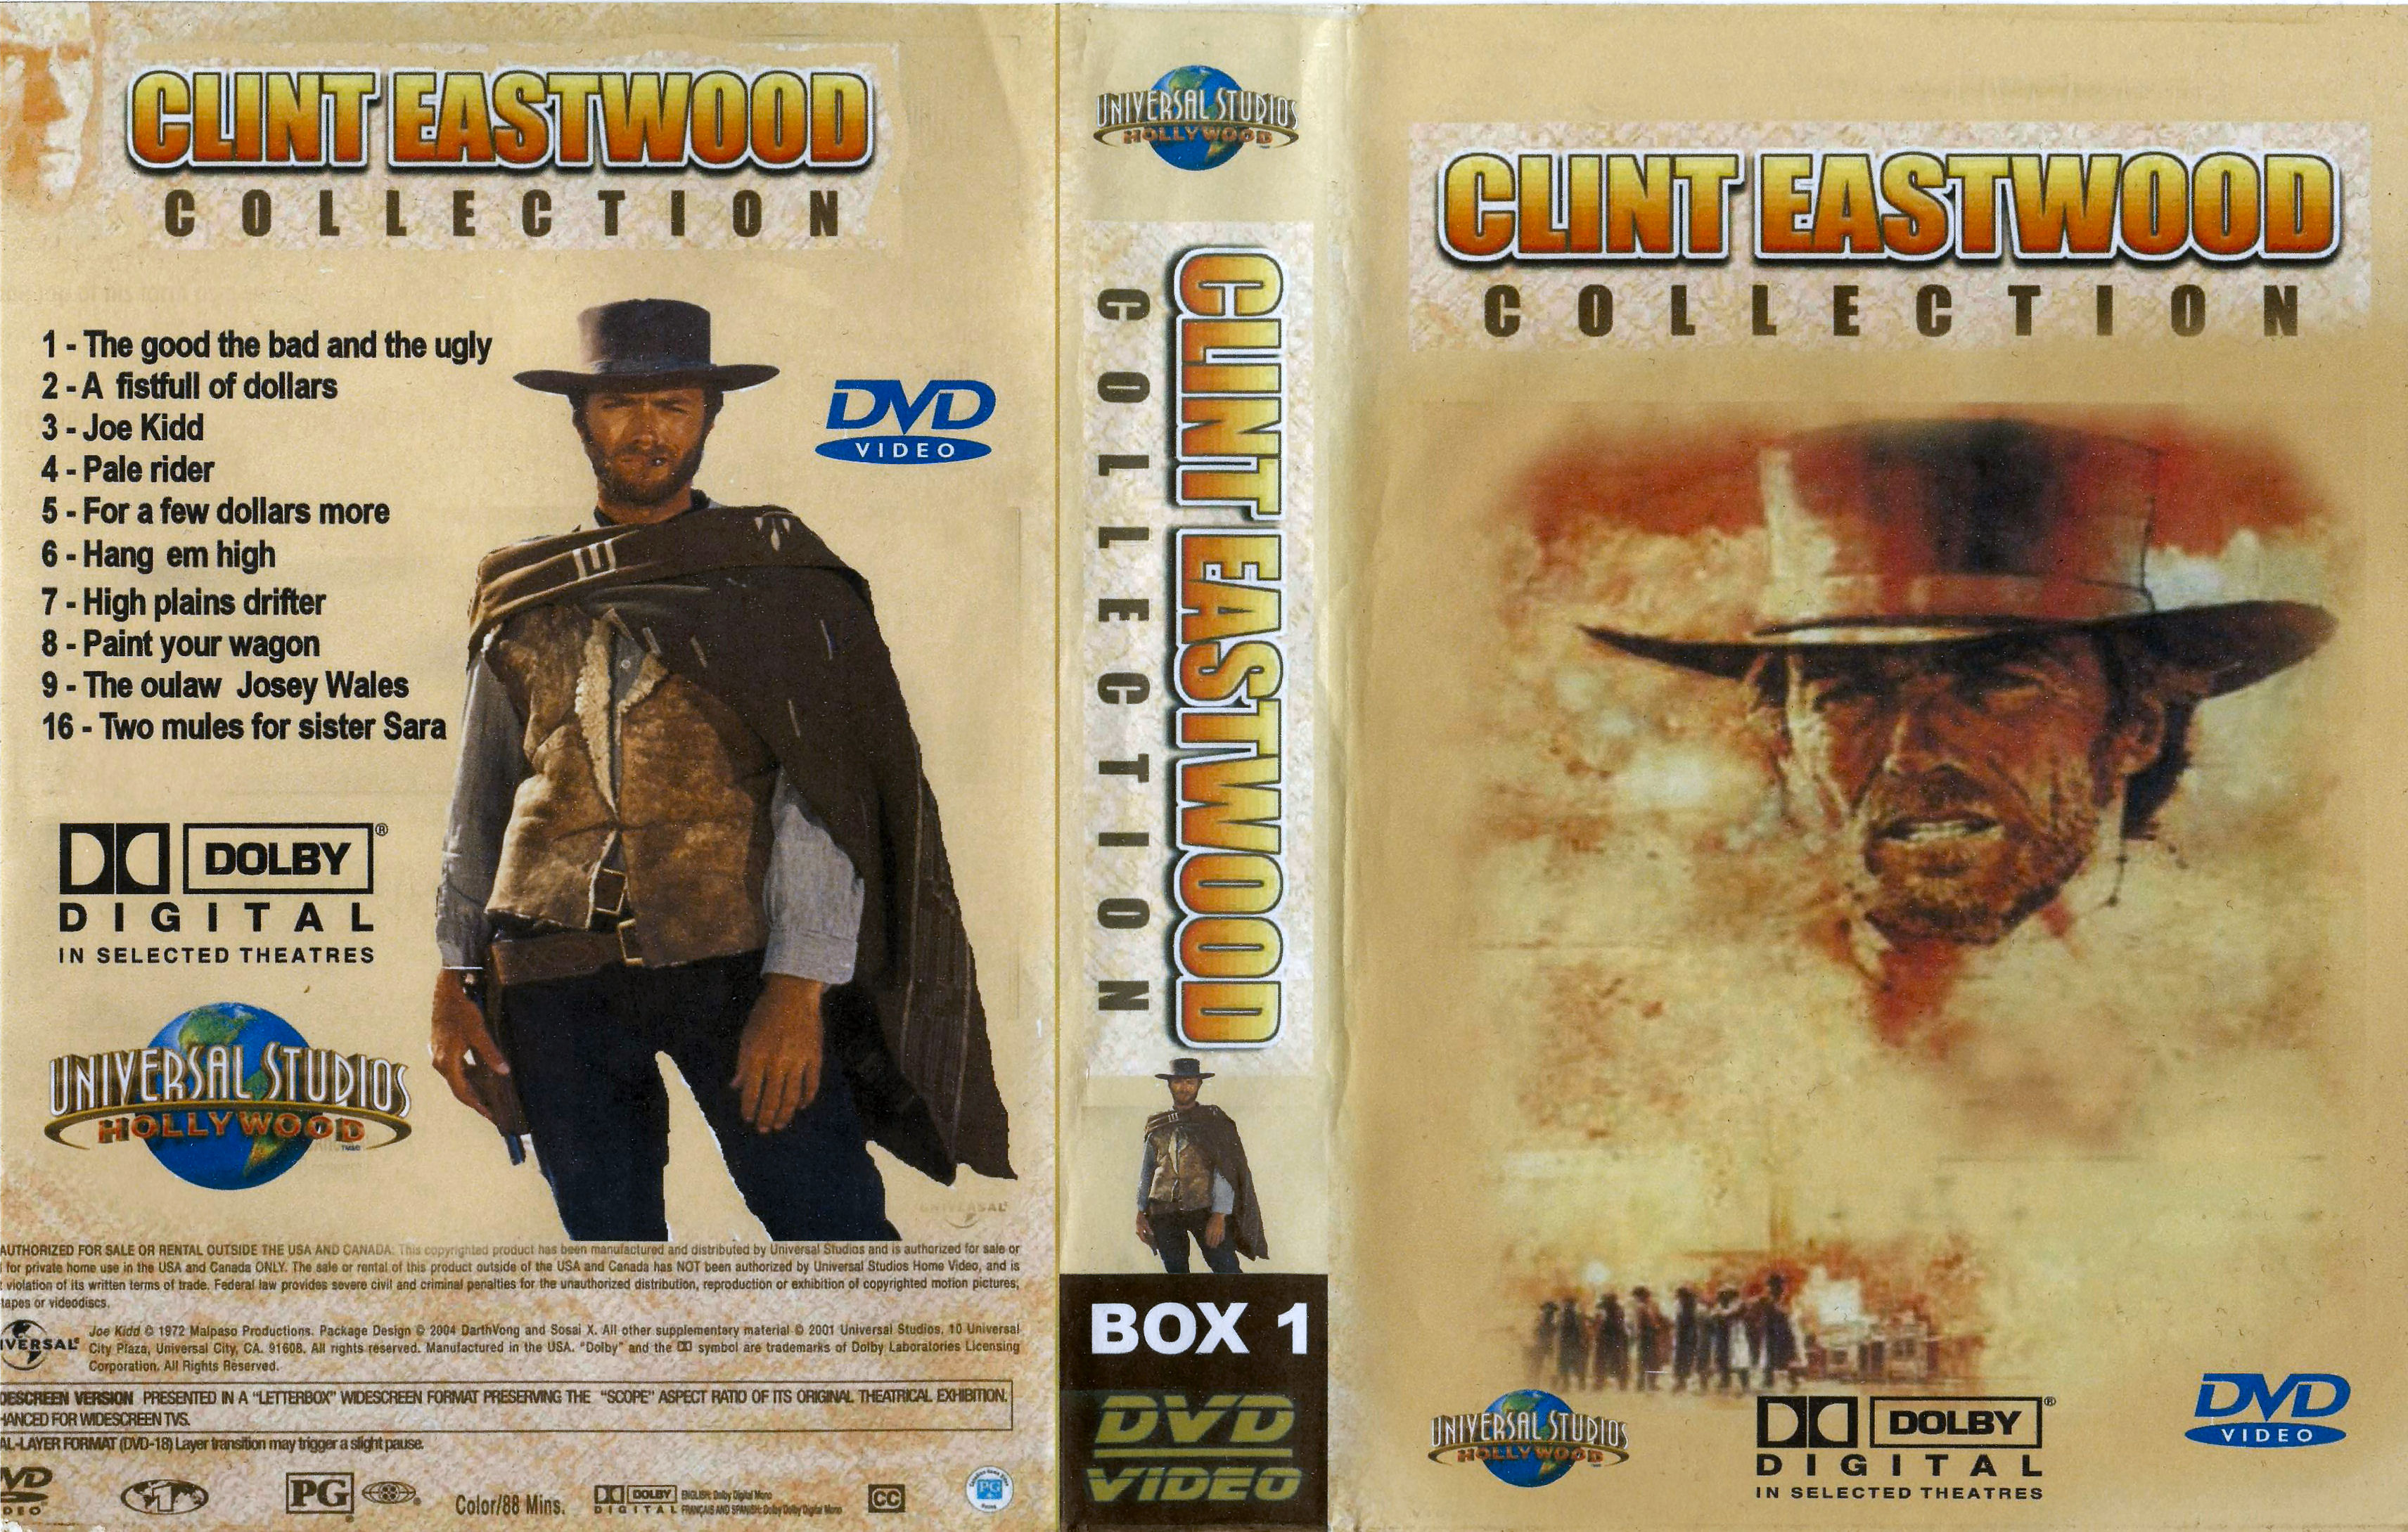 Clint Eastwood Collectie Box 1 DvD 8 van 10